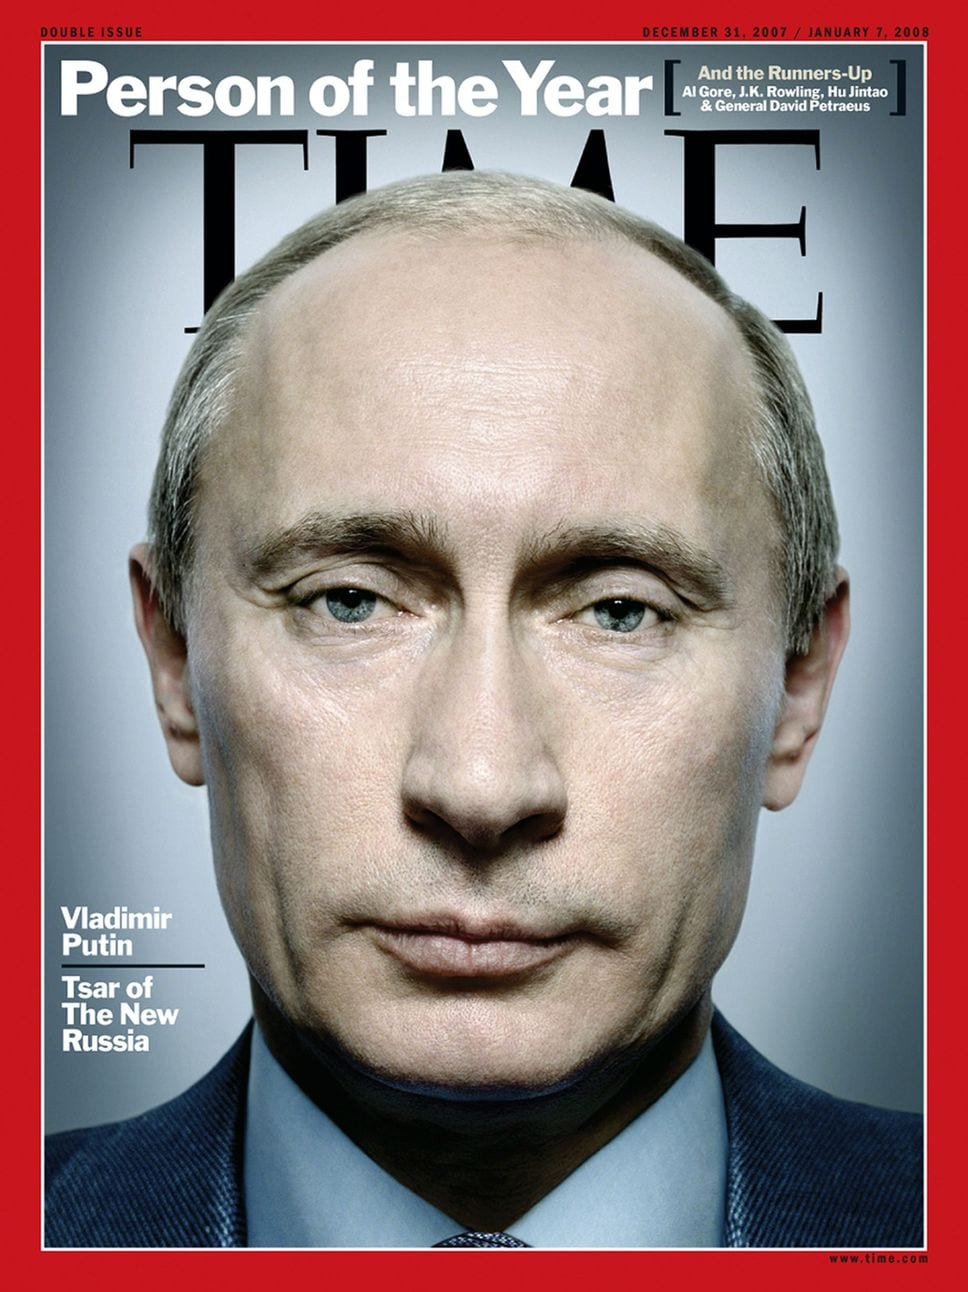 Vladimir Poutine serait un vampire selon des théories conspirationnistes (photos)